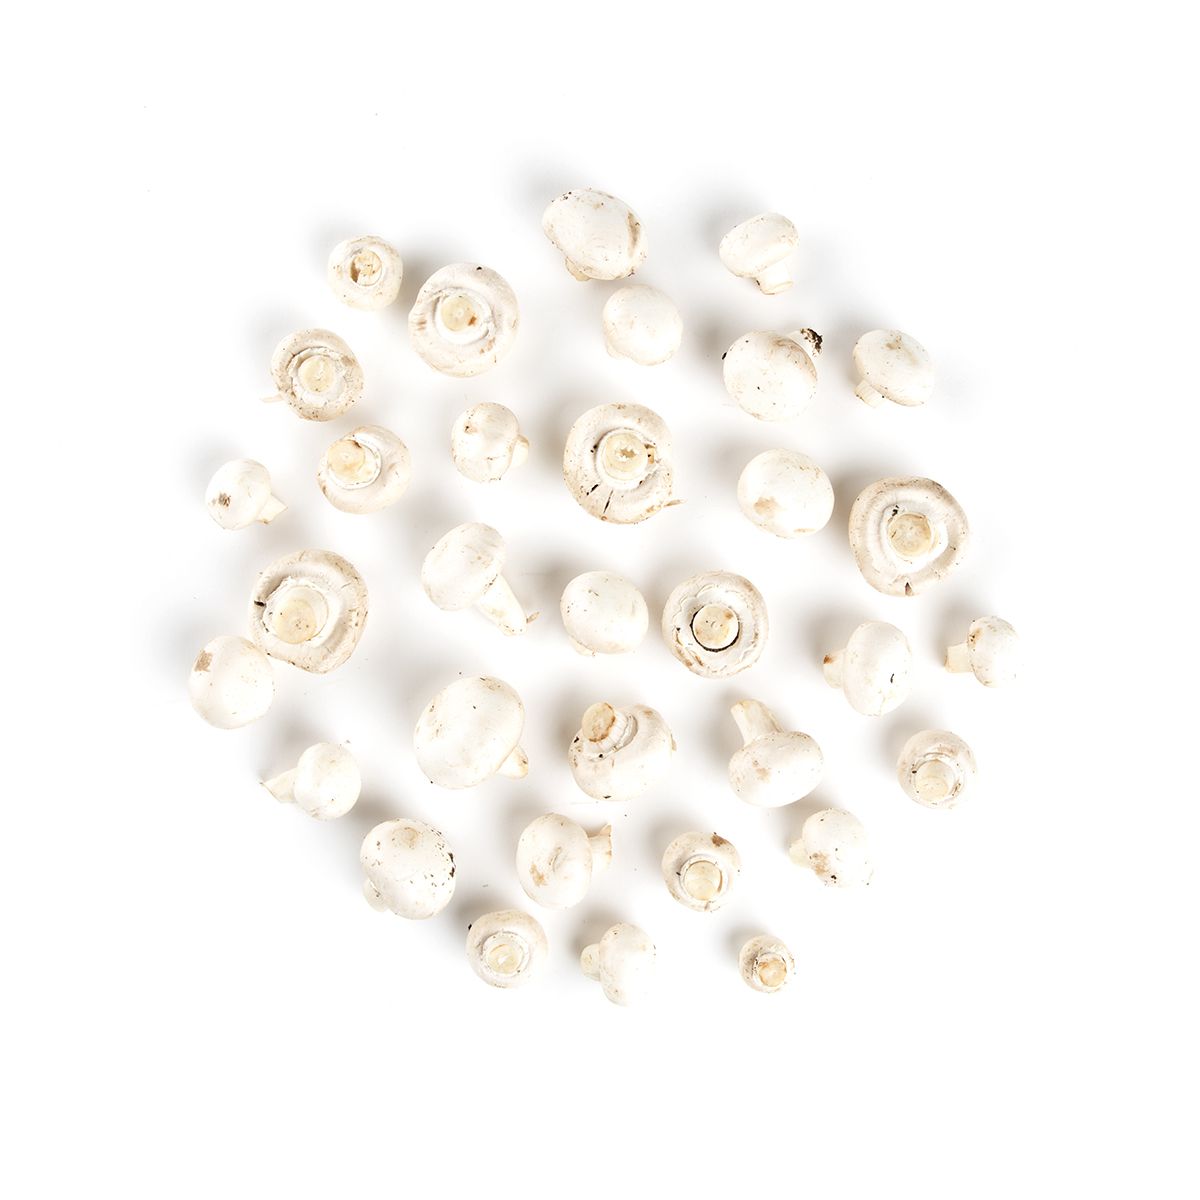 BoxNCase #1 Grade White Medium Mushrooms